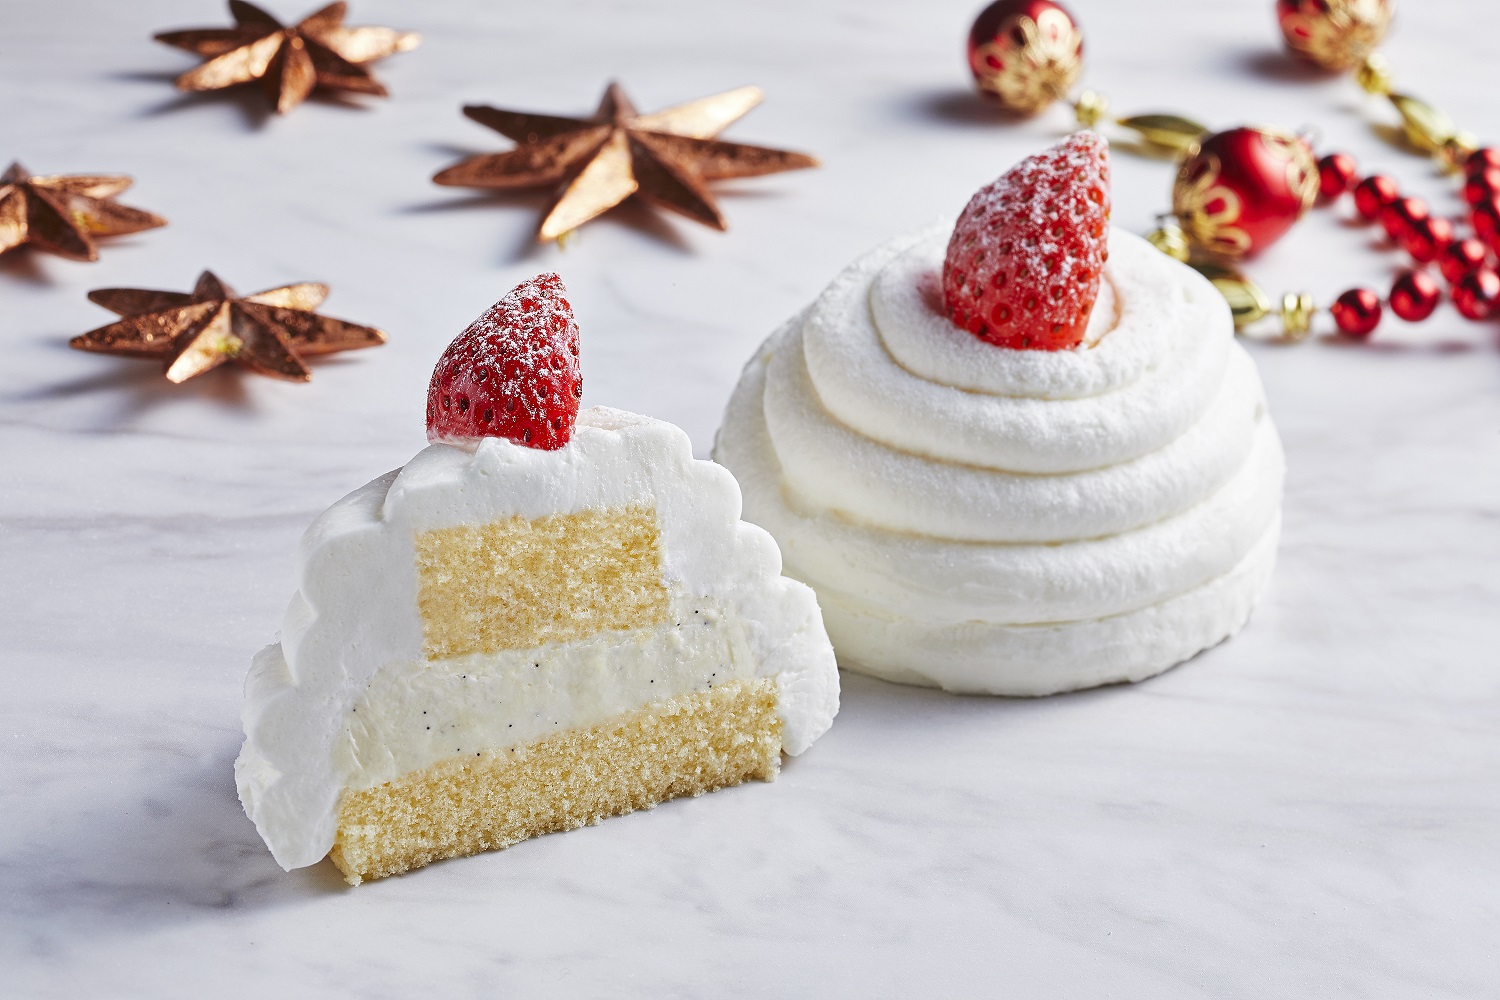 おひとり用お試しサイズのクリスマスケーキ 3品発売 ローソン公式サイト